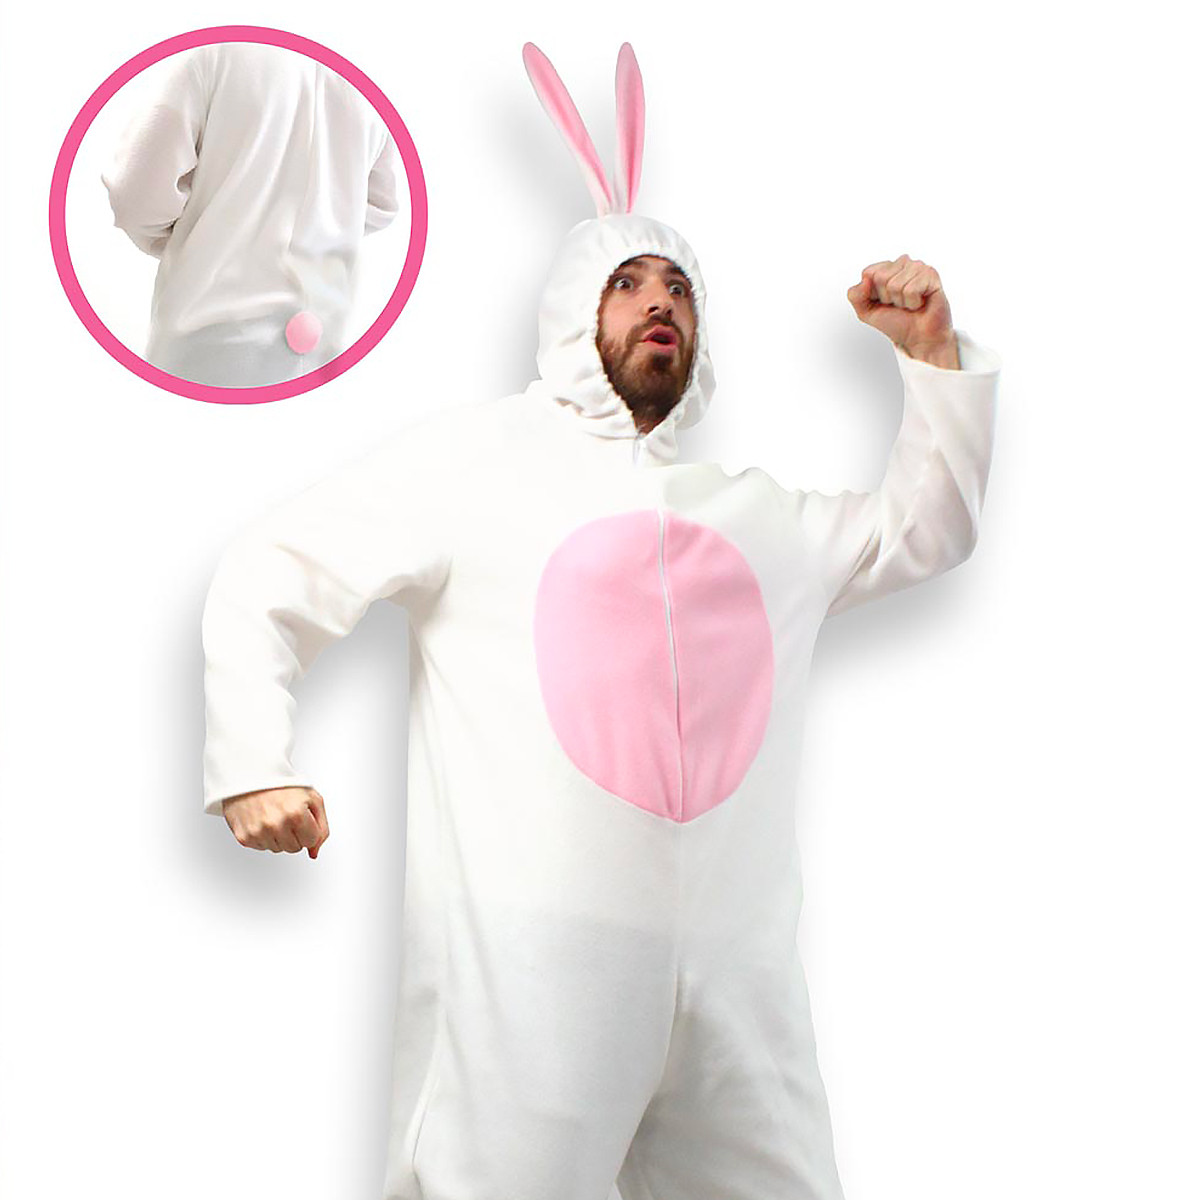 Costume super lapin, un déguisement de Lapin hilarant - 29,65 €